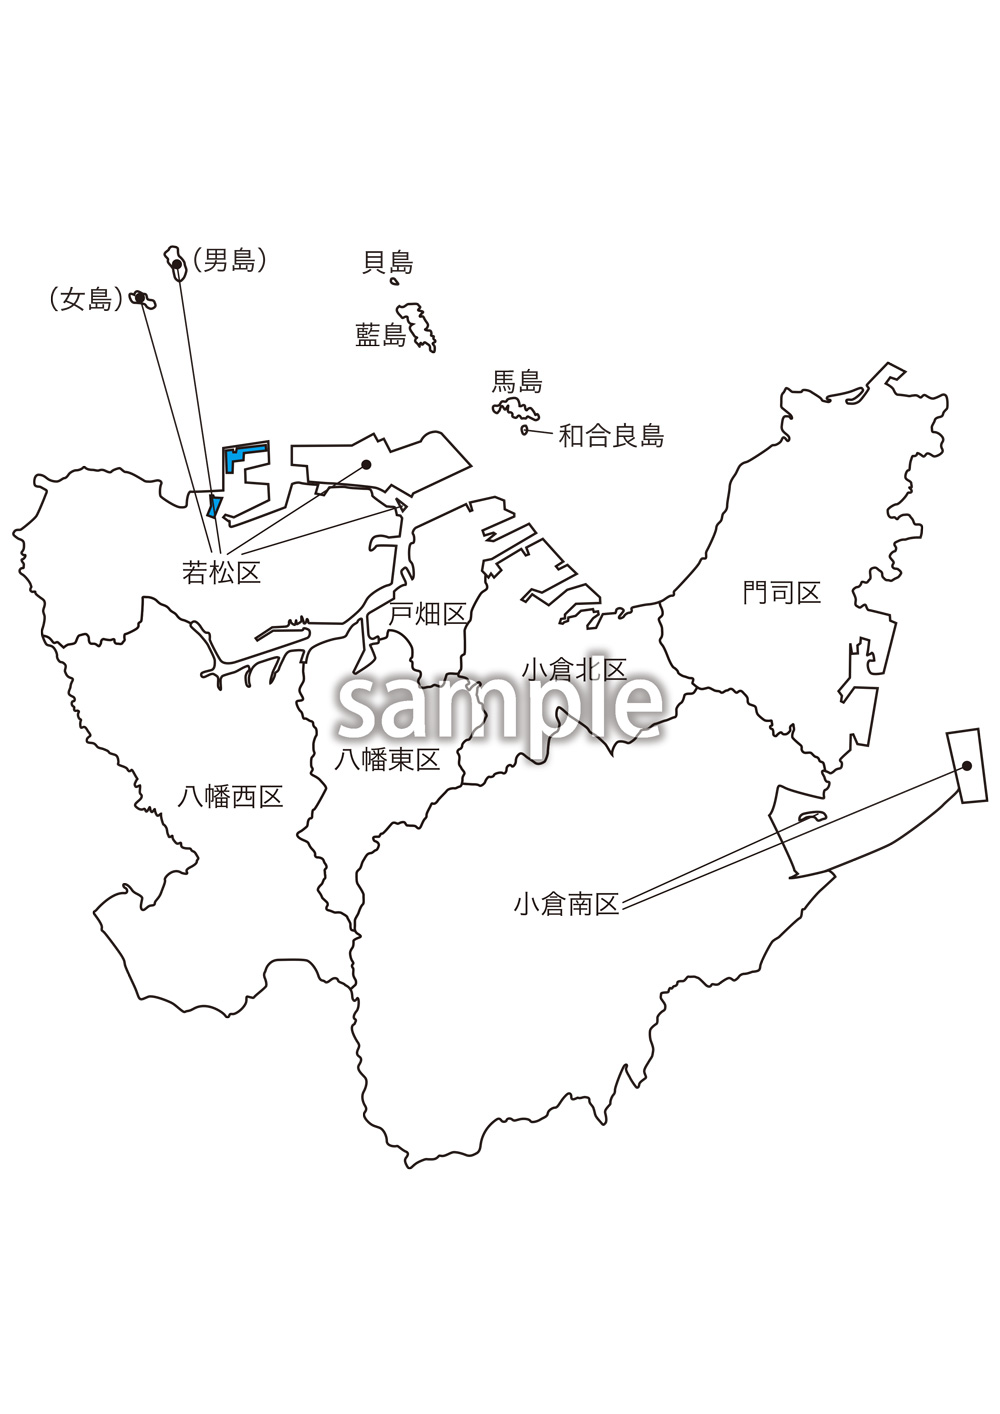 福岡県北九州市区名入り地図